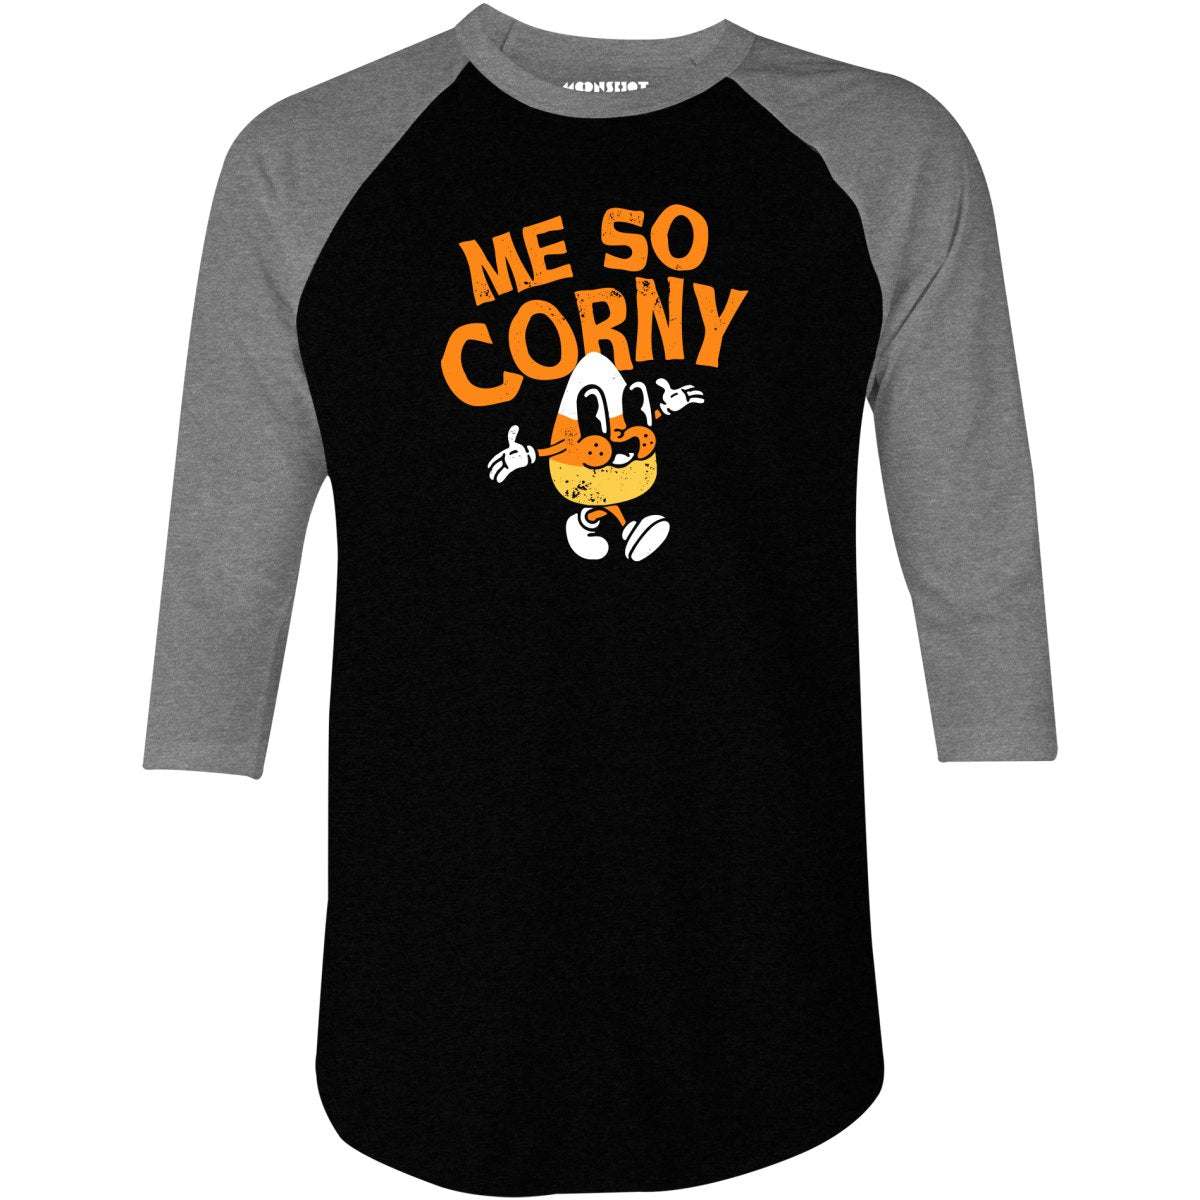 Me So Corny v2 - 3/4 Sleeve Raglan T-Shirt